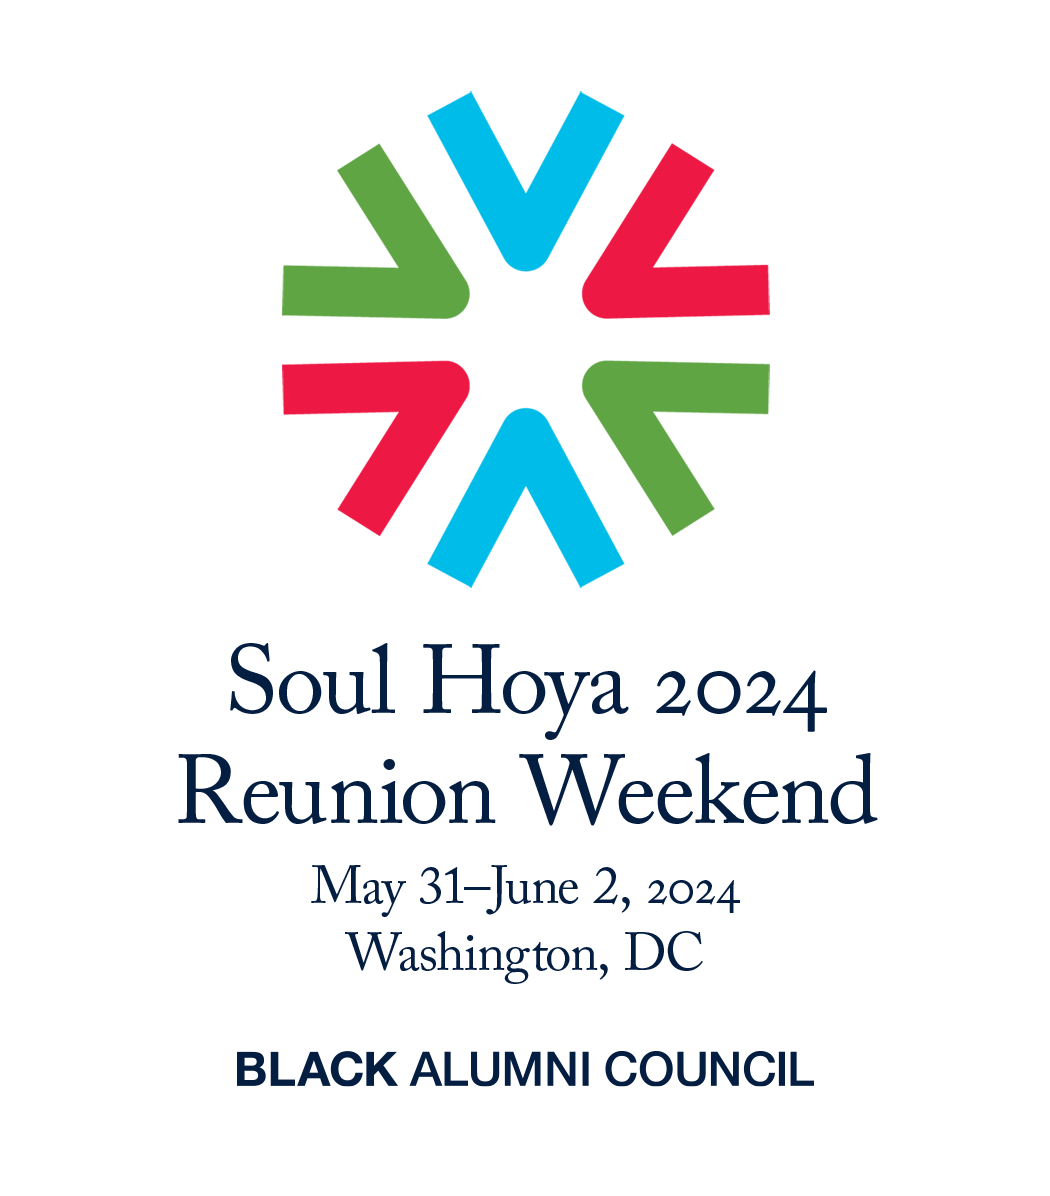 soul hoya 2024 reunion weekend may 31-june 2 2024, washington dc